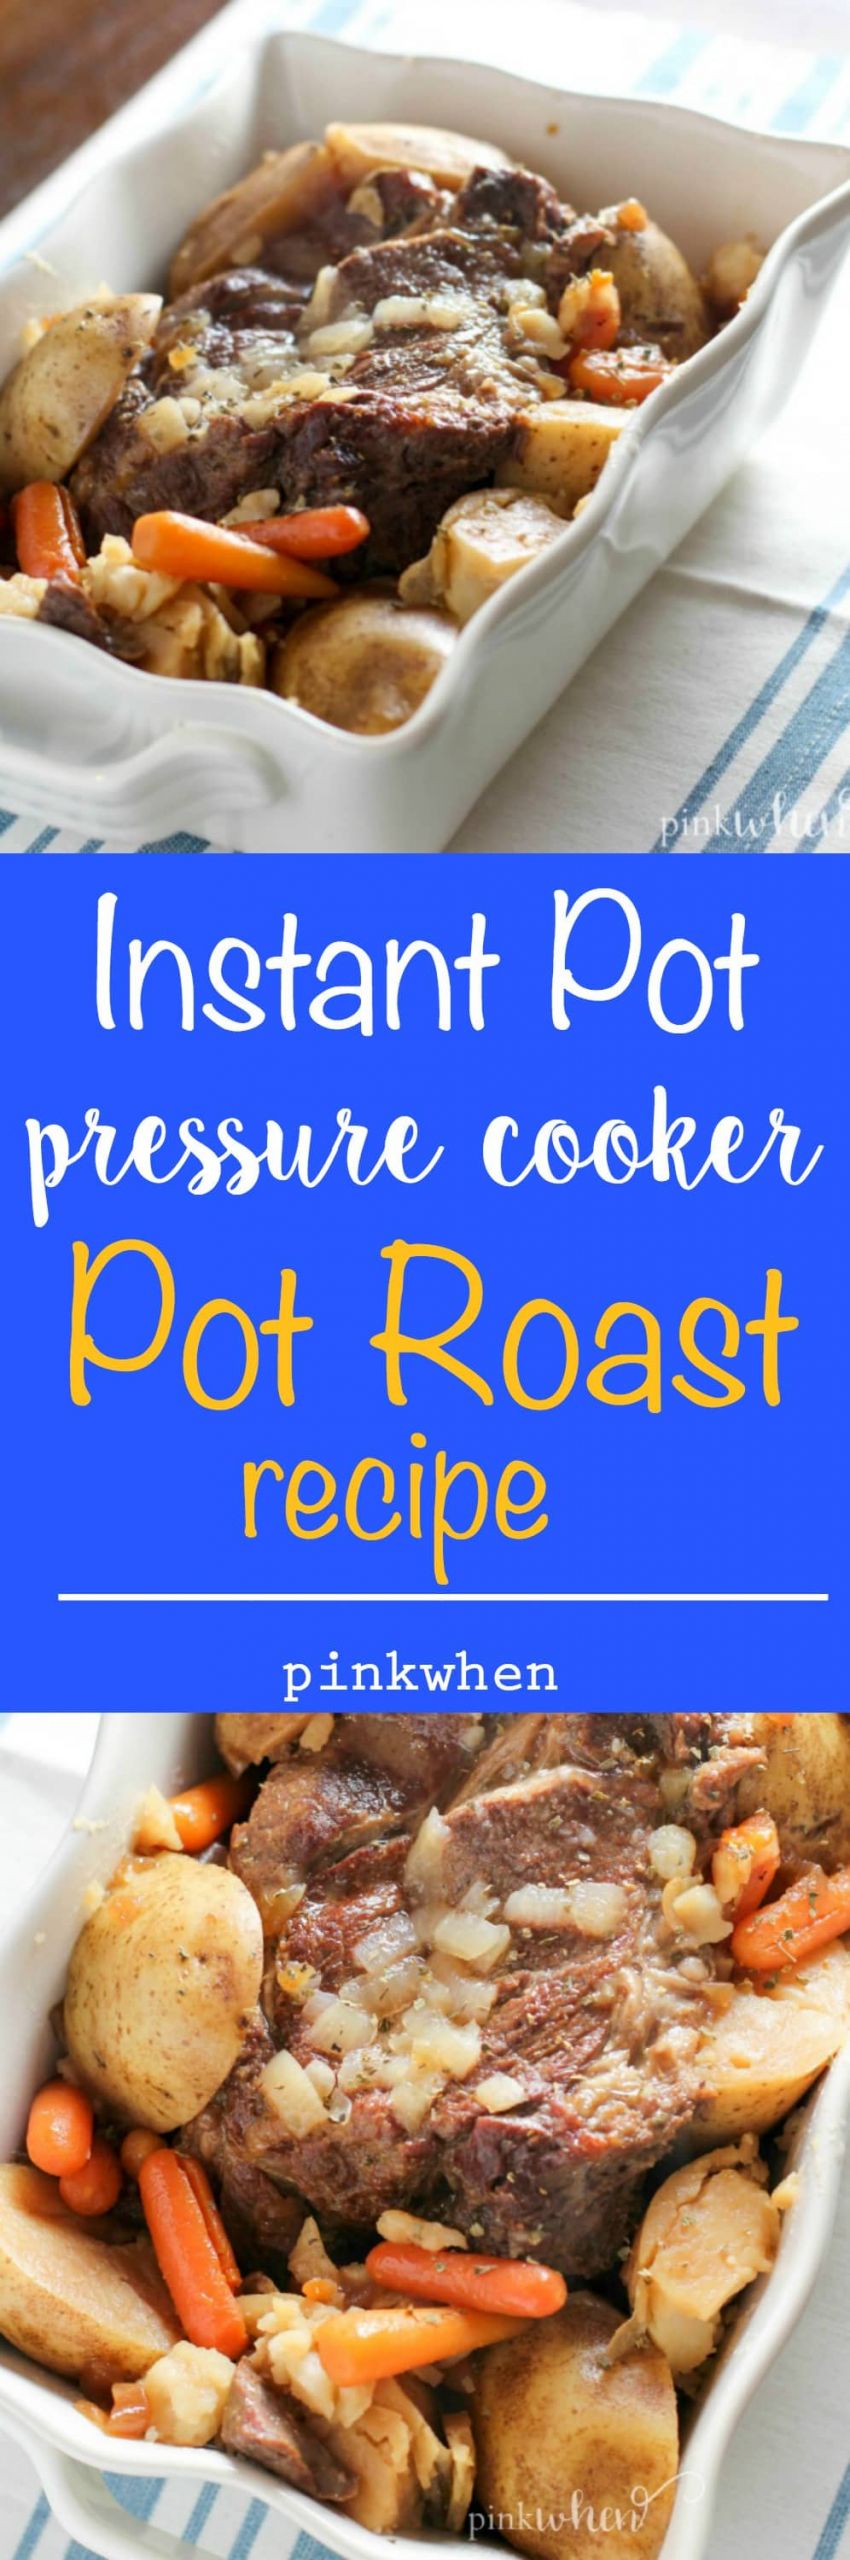 Instant Pot Recipes Roast
 Instant Pot Pressure Cooker Pot Roast Recipe PinkWhen